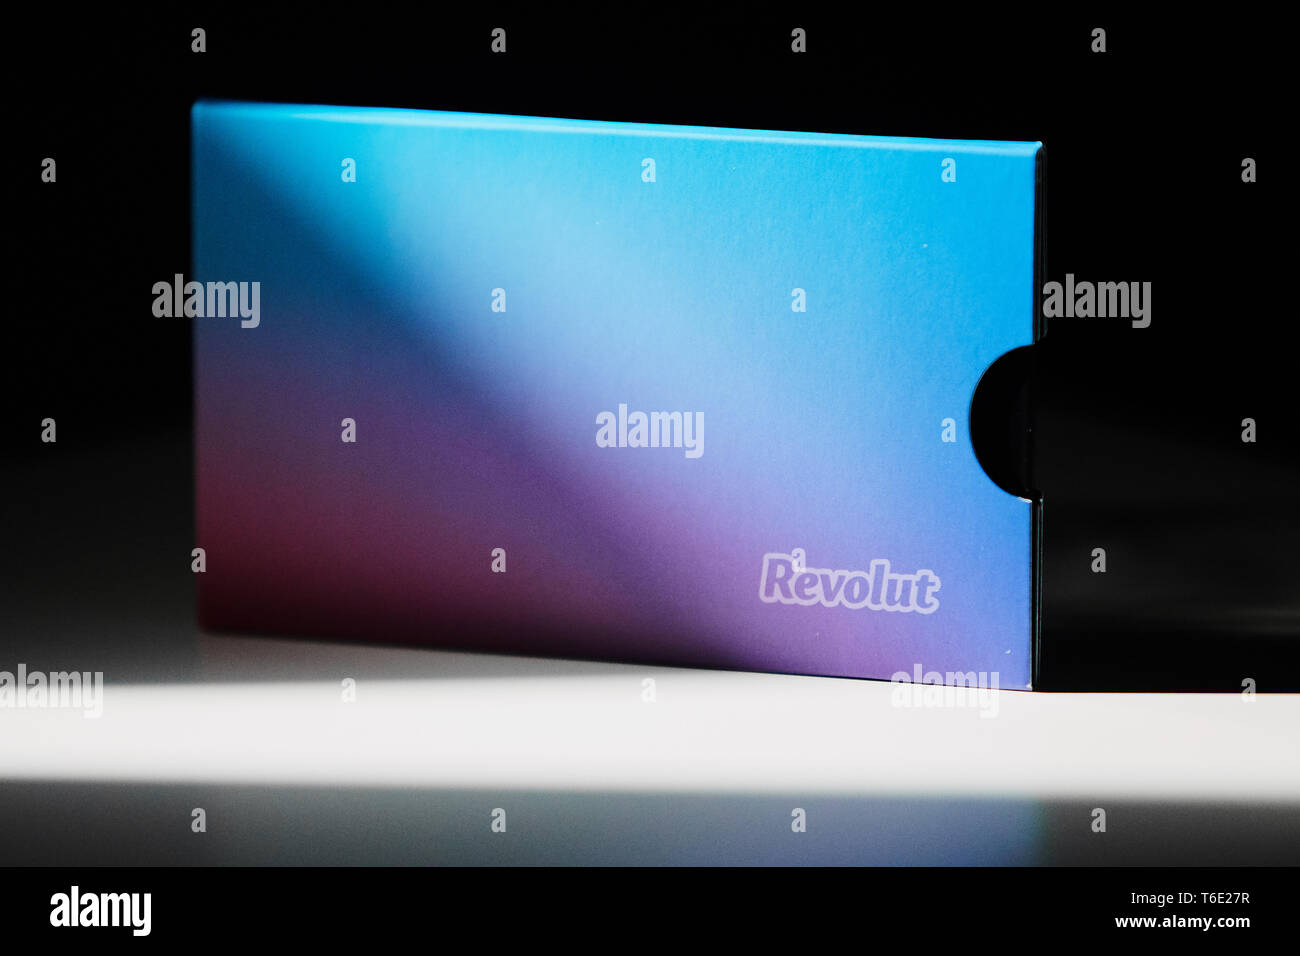 Revolut card Verpackungen in der Sonne Licht mit dem Slogan "Banking". Revolut ist ein Mobile-basierten Geldwechsel und fintech/Banking App. Stockfoto